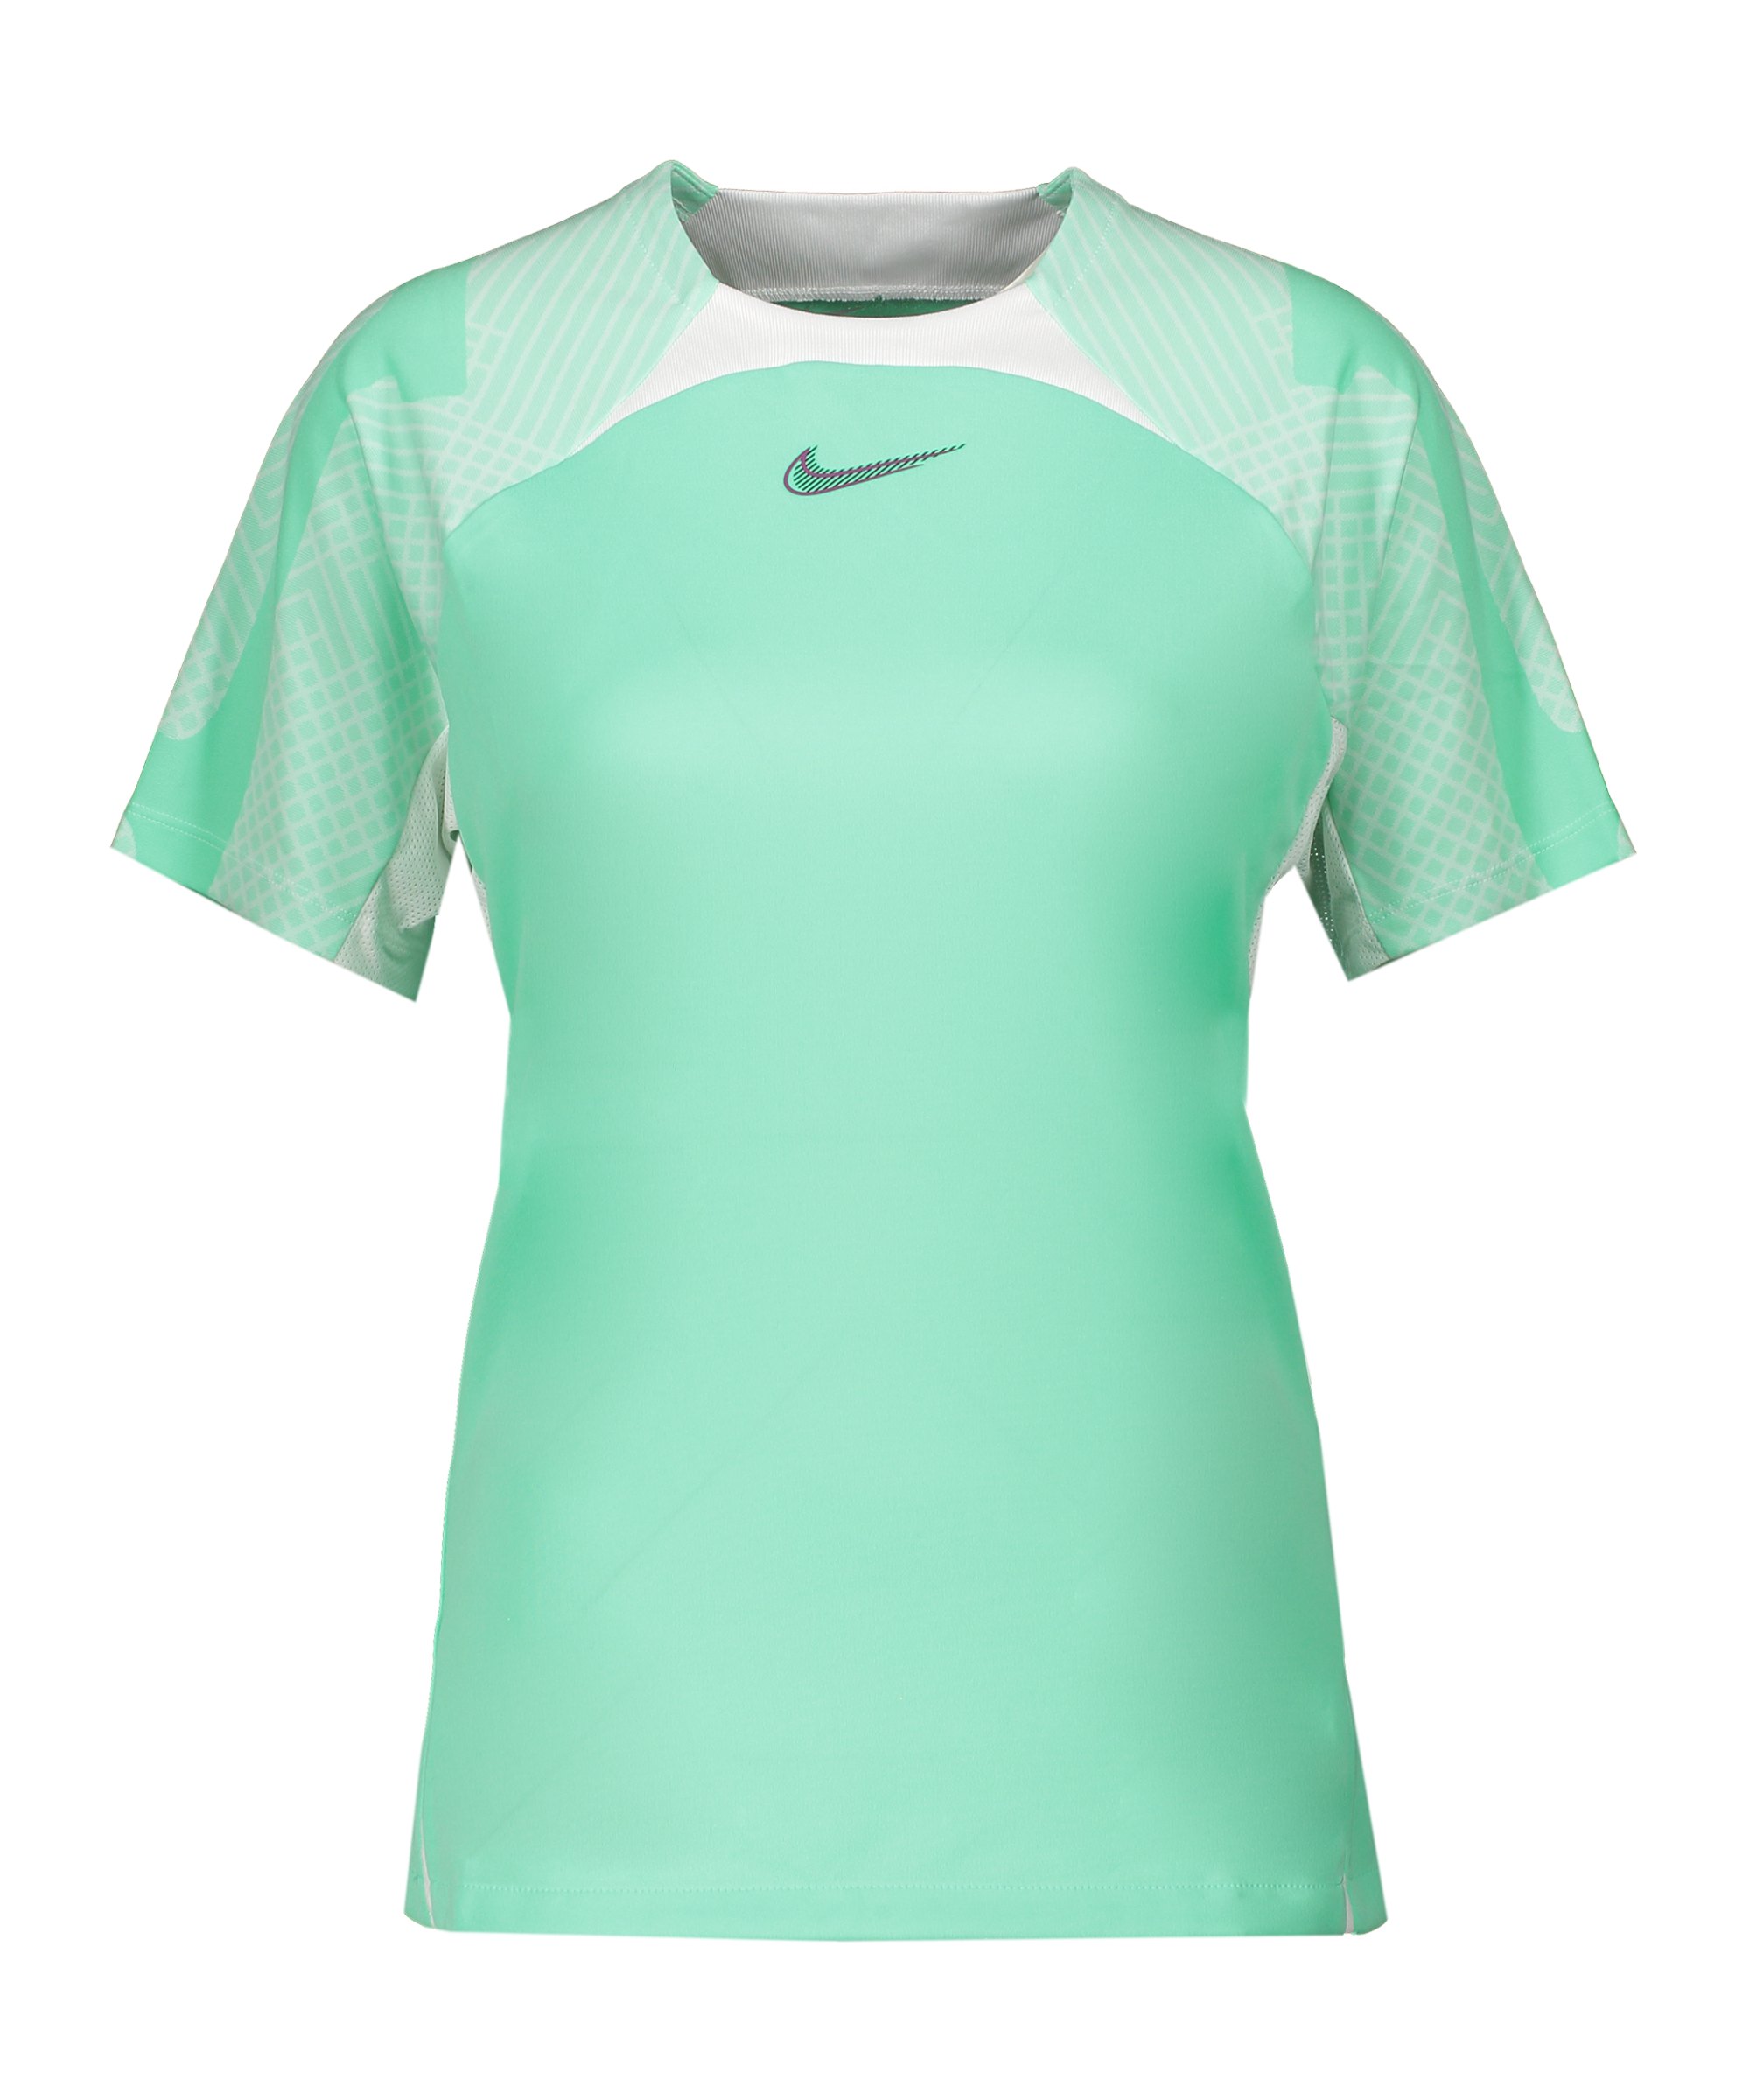 Nike Strike T-Shirt Damen Grün Weiss F342 - gruen